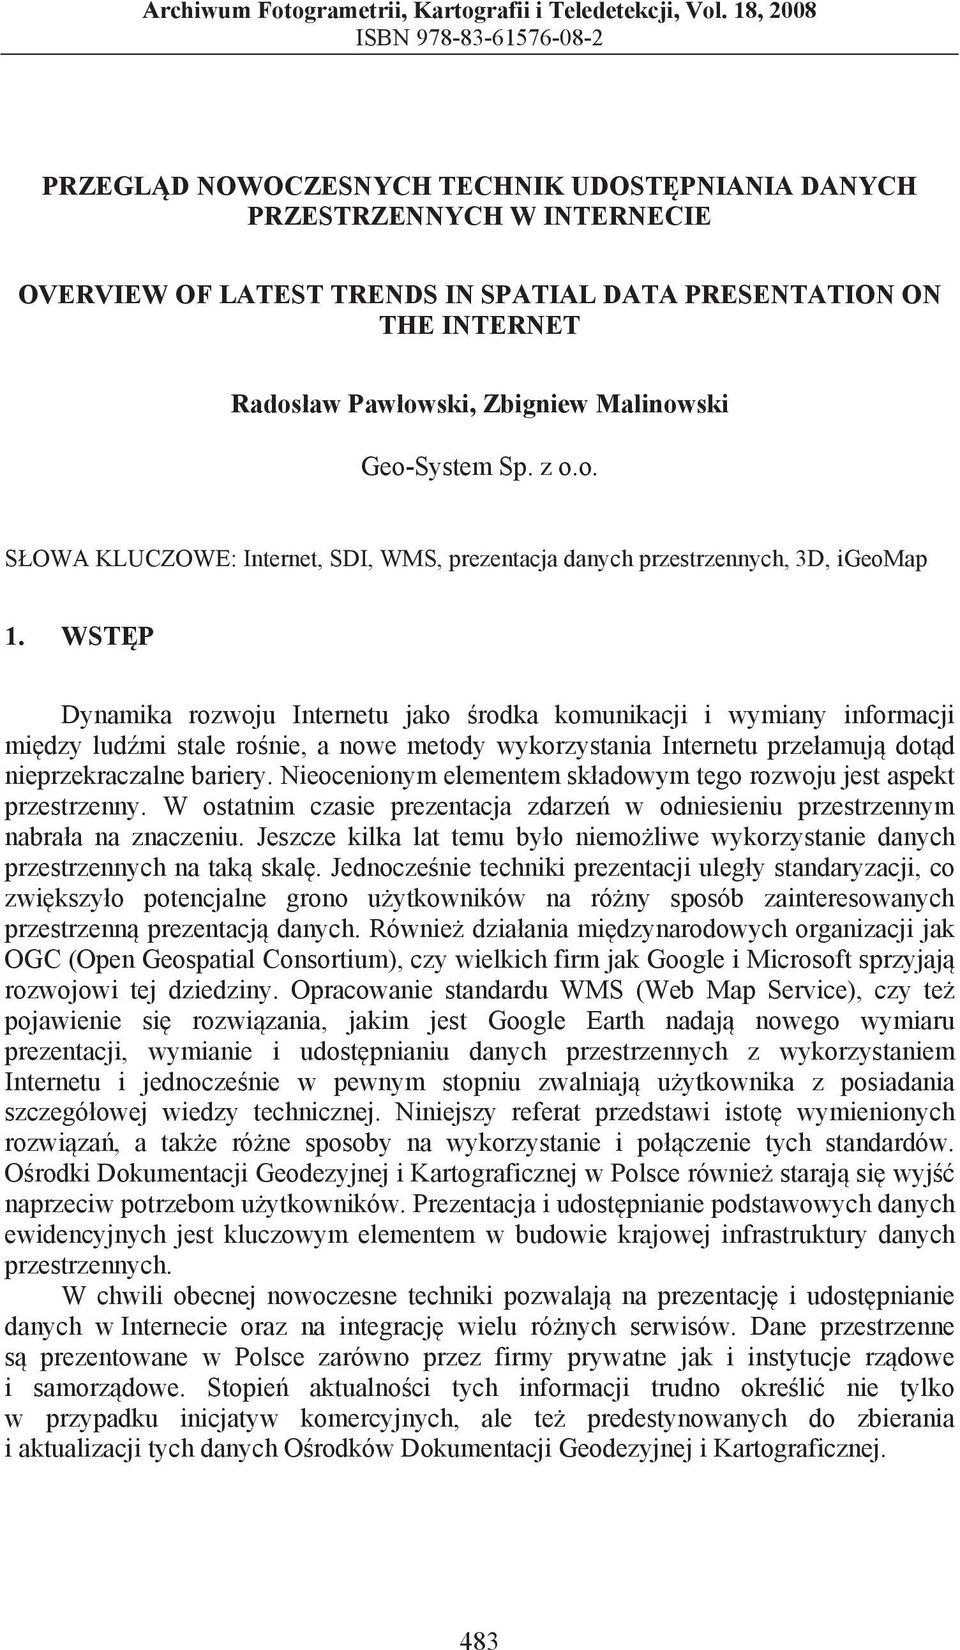 owski, Zbigniew Malinowski Geo-System Sp. z o.o. S OWA KLUCZOWE: Internet, SDI, WMS, prezentacja danych przestrzennych, 3D, igeomap 1.